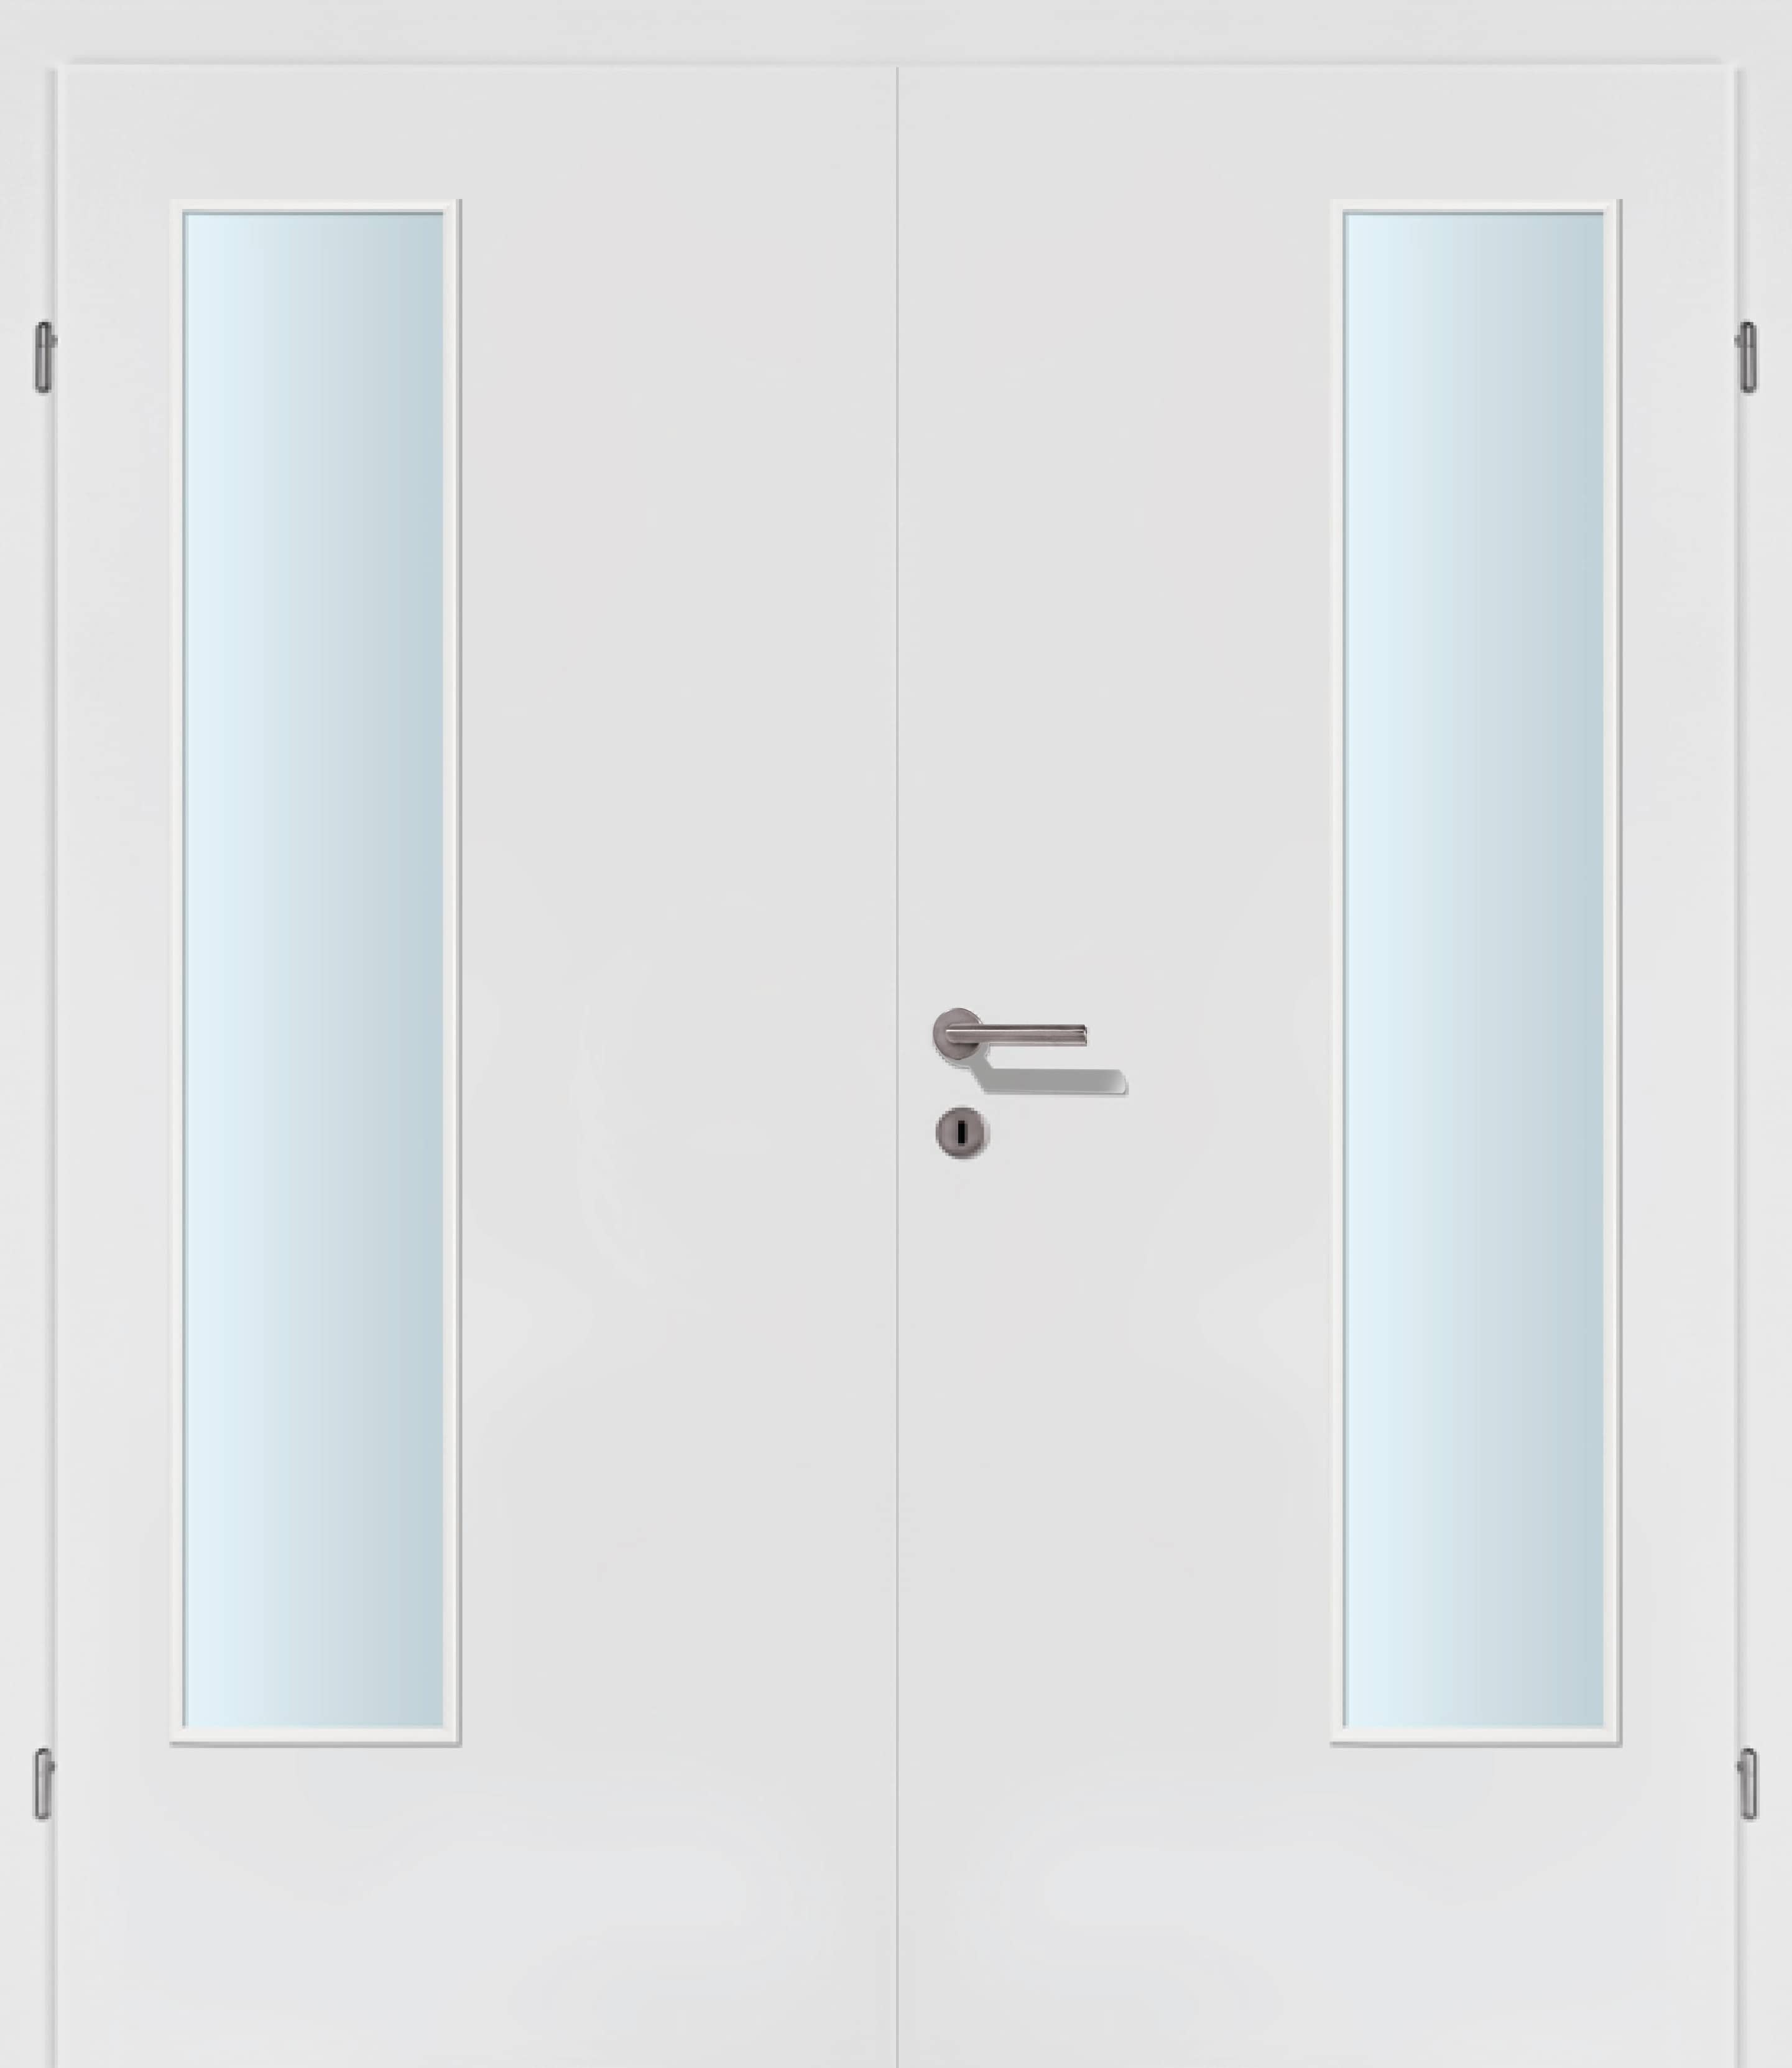 Selektion weiss Innentür Inkl. Zarge (Türrahmen) Doppeltüre Inkl. Glaslichte EN Bandseitig